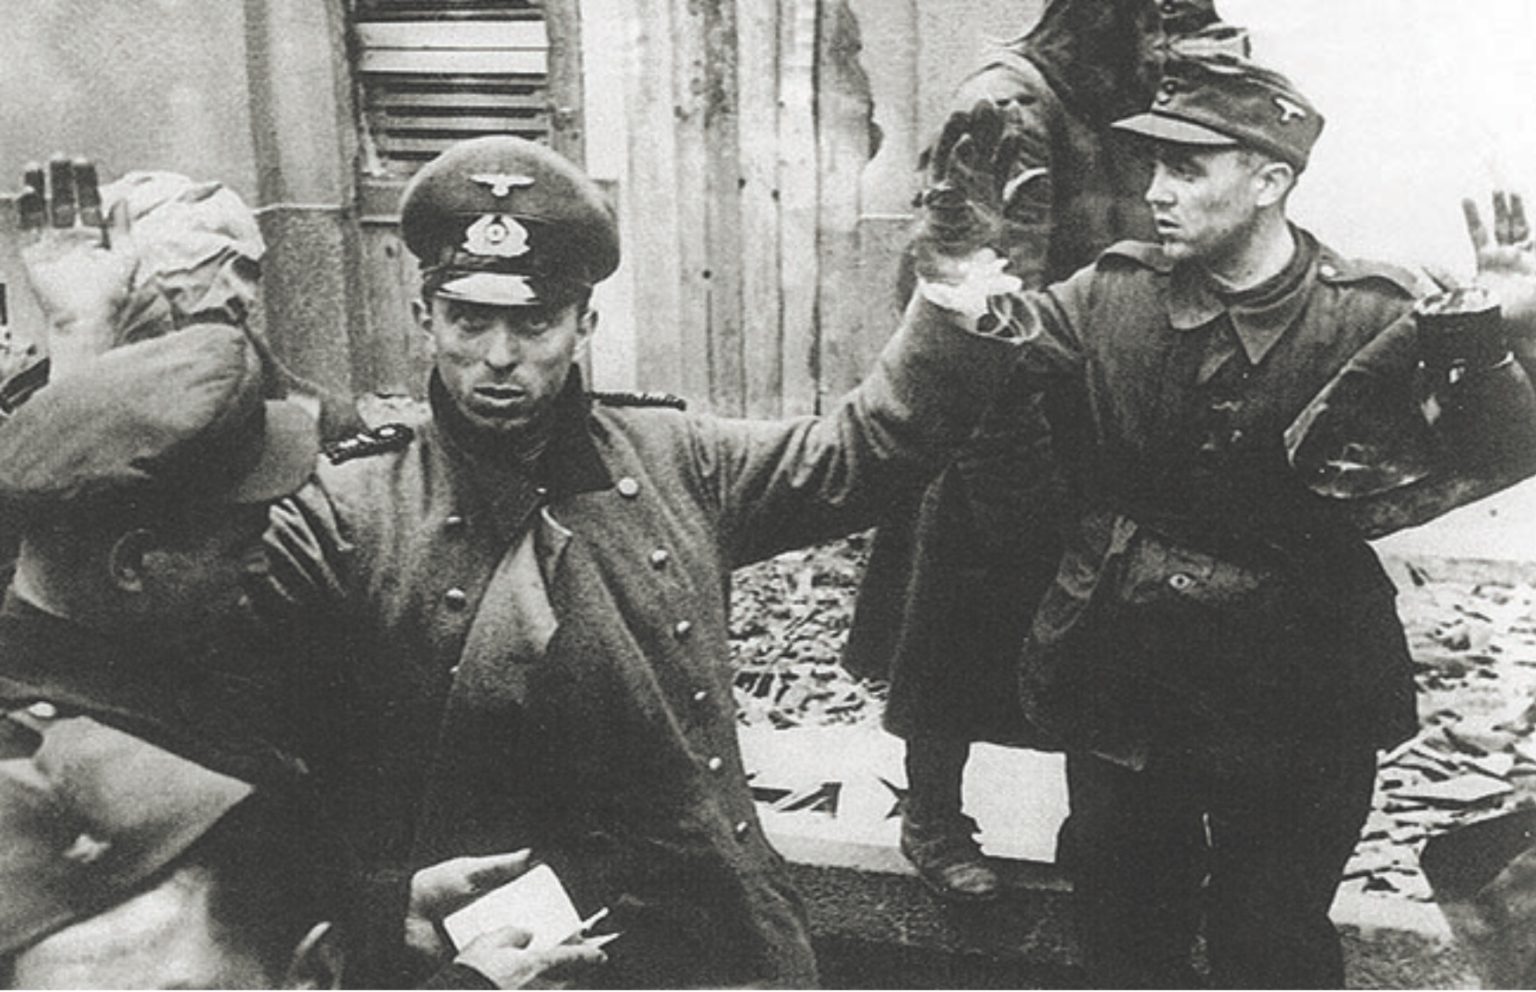 Первое крупное поражение германии. Немецкие солдаты сдаются в плен 1945. Берлин 1945 немцы сдаются в плен. Дивизия Нордланд Берлин 1945. Немецкие солдаты сдаются в плен в Берлине.